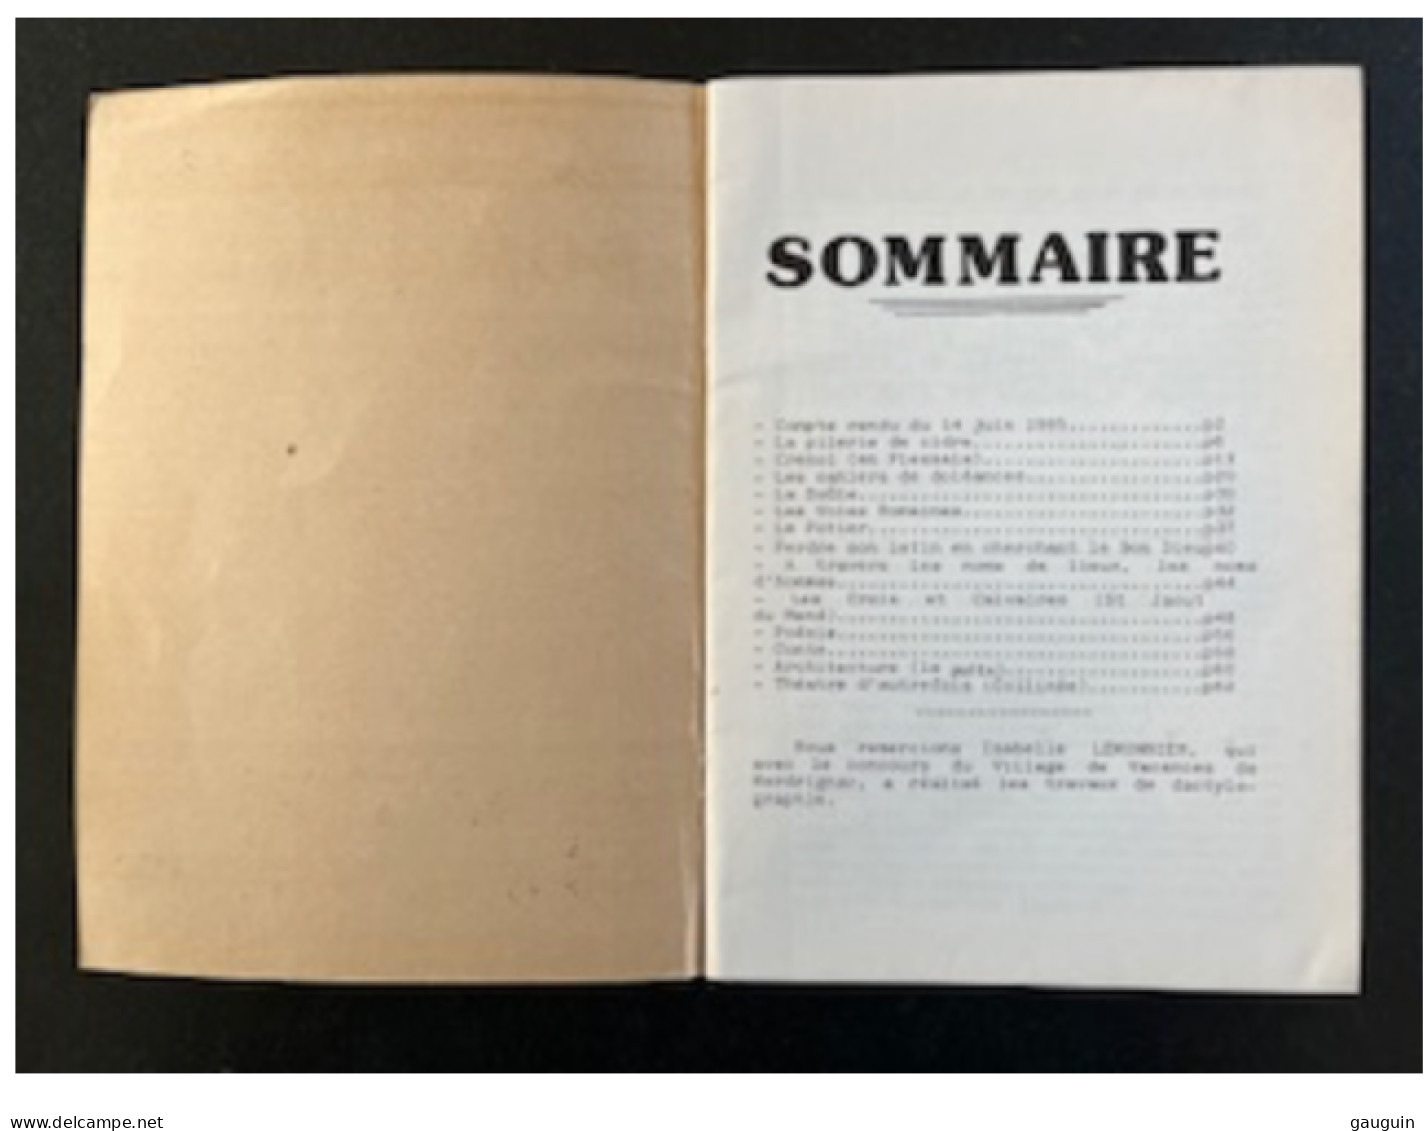 Le MENÉ - ANNALES Association Sauvegarde Du Patrimoine Culturel Du Mené - Tome 2 (1985) - Bretagne